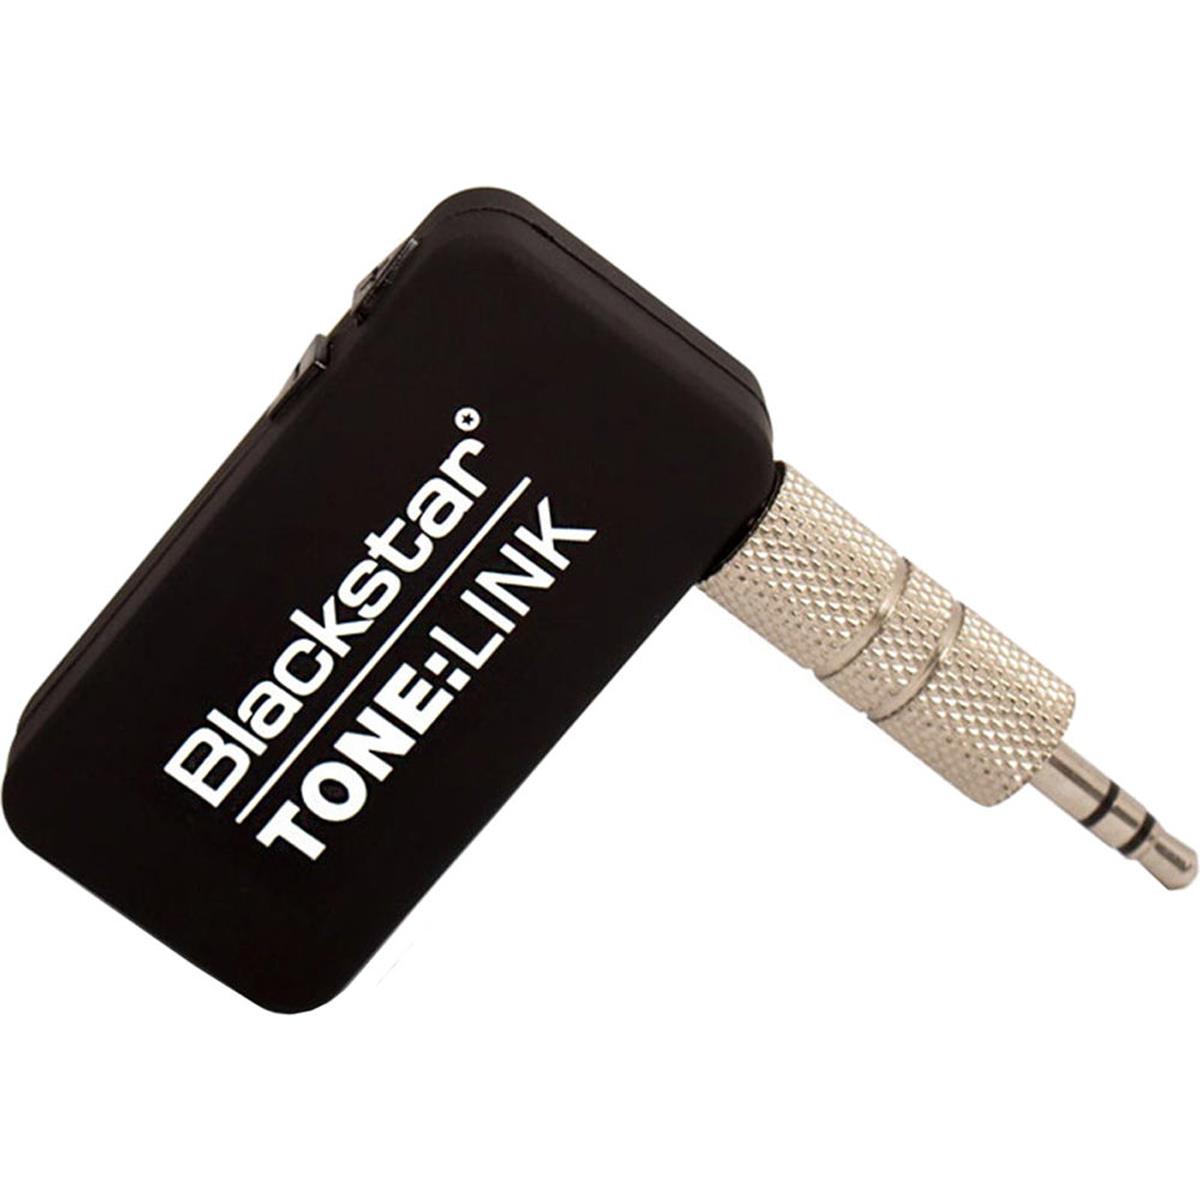 Image of Blackstar Tone Link Bluetooth Audio Receiver